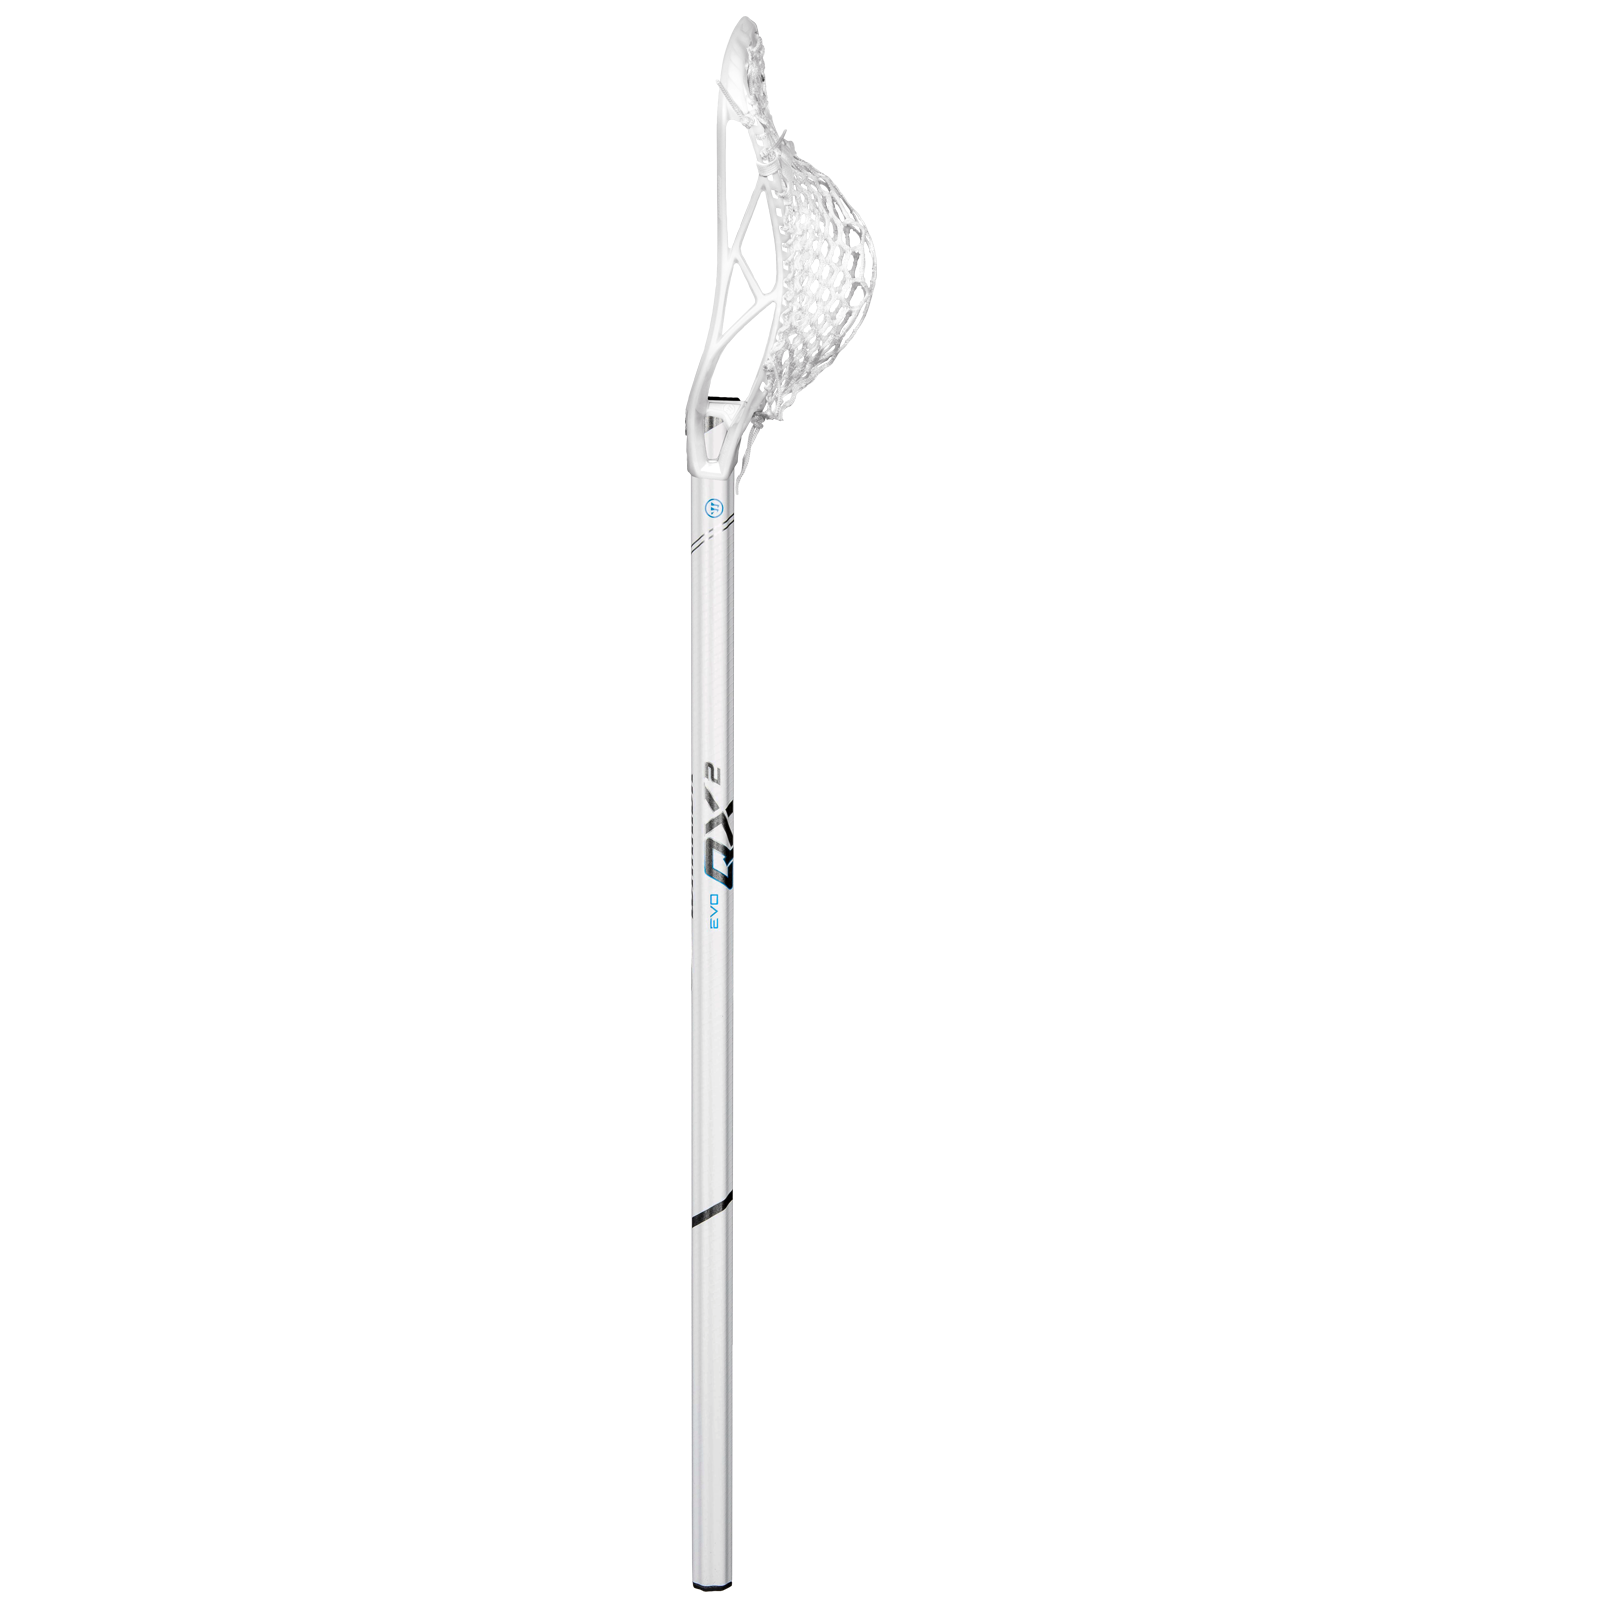 Warrior EVO QX2-O Iso Attack Lacrosse Complete Stick